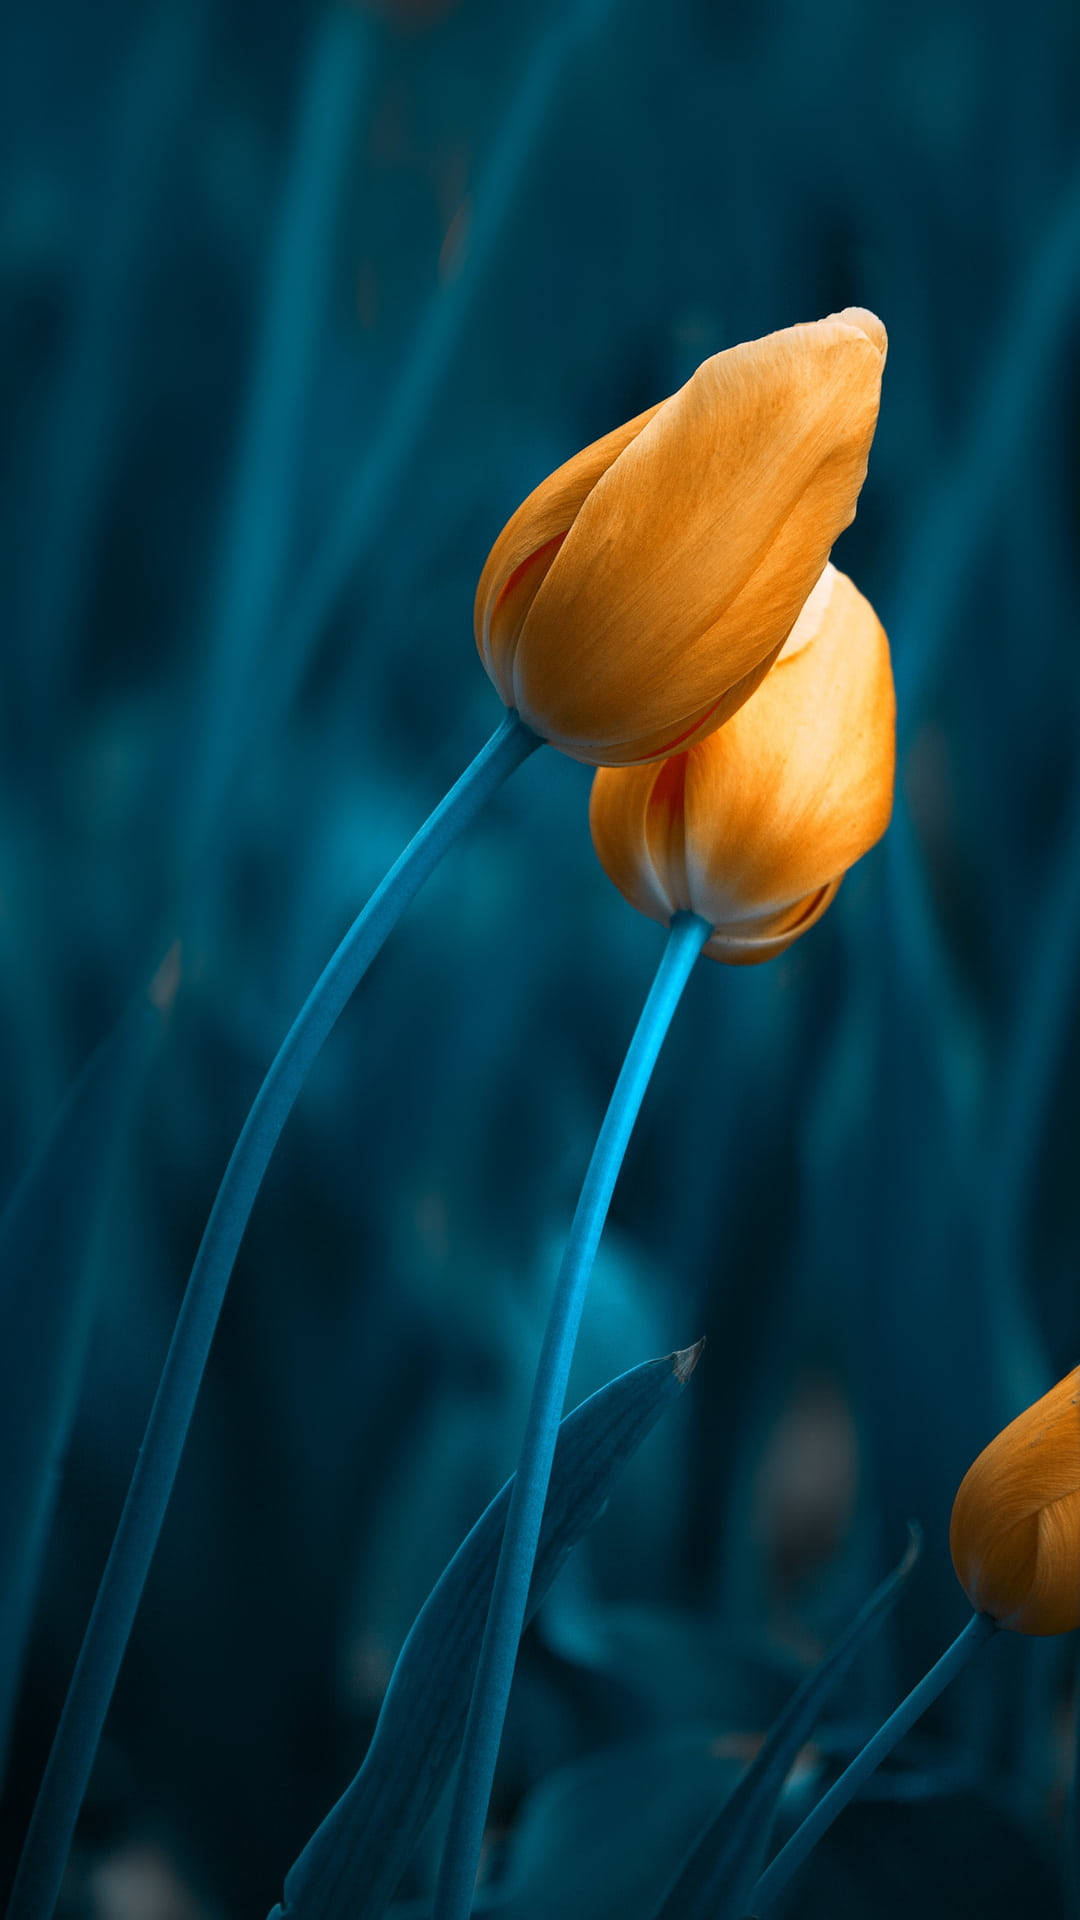 Gul knop af tulipan blomster, der flyver imod en mørkeblå baggrund. Wallpaper